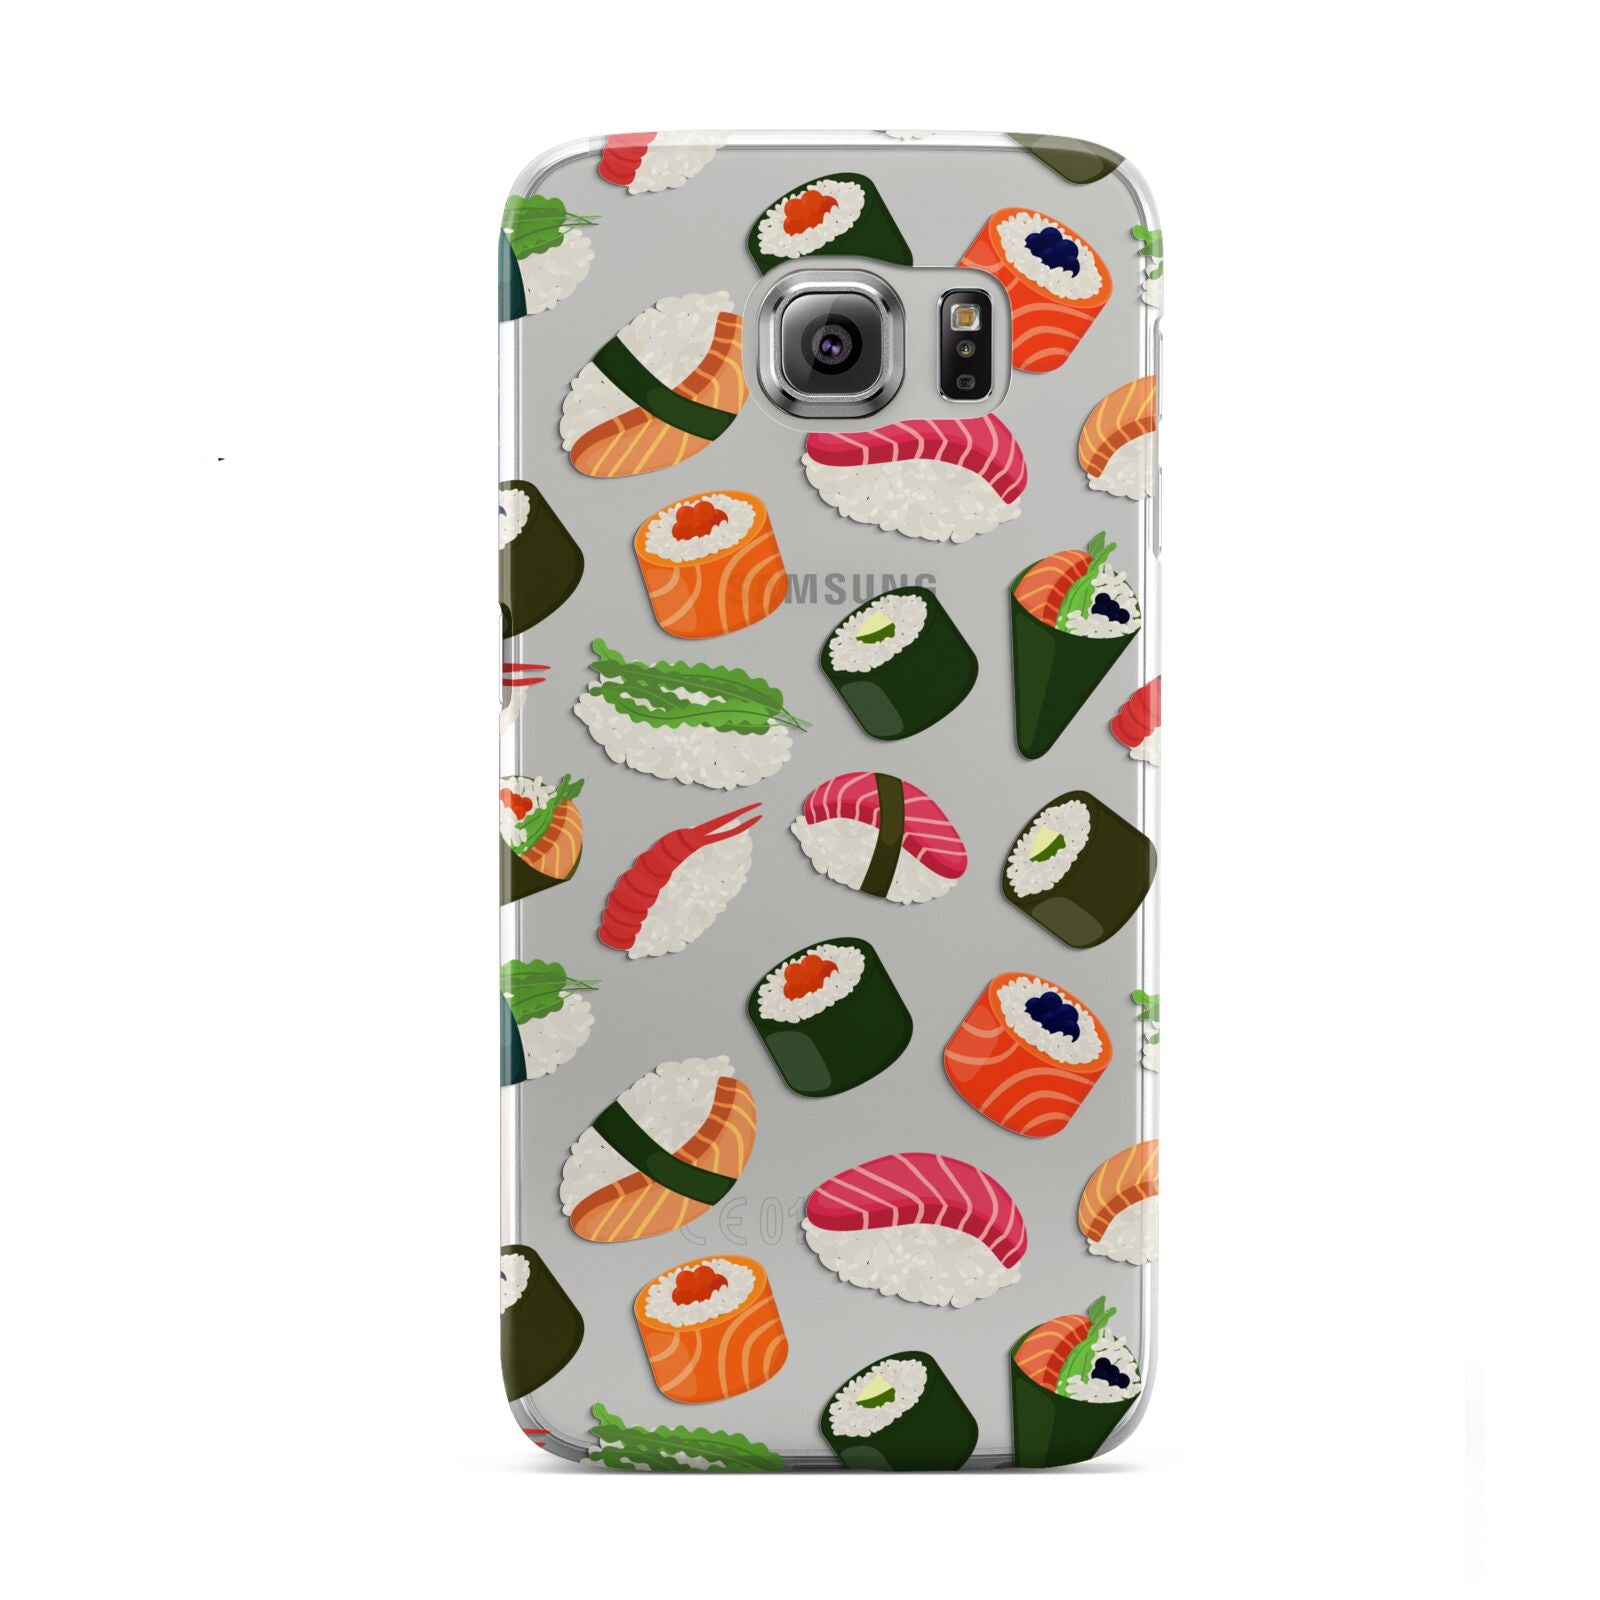 Sushi Fun Samsung Galaxy S6 Case